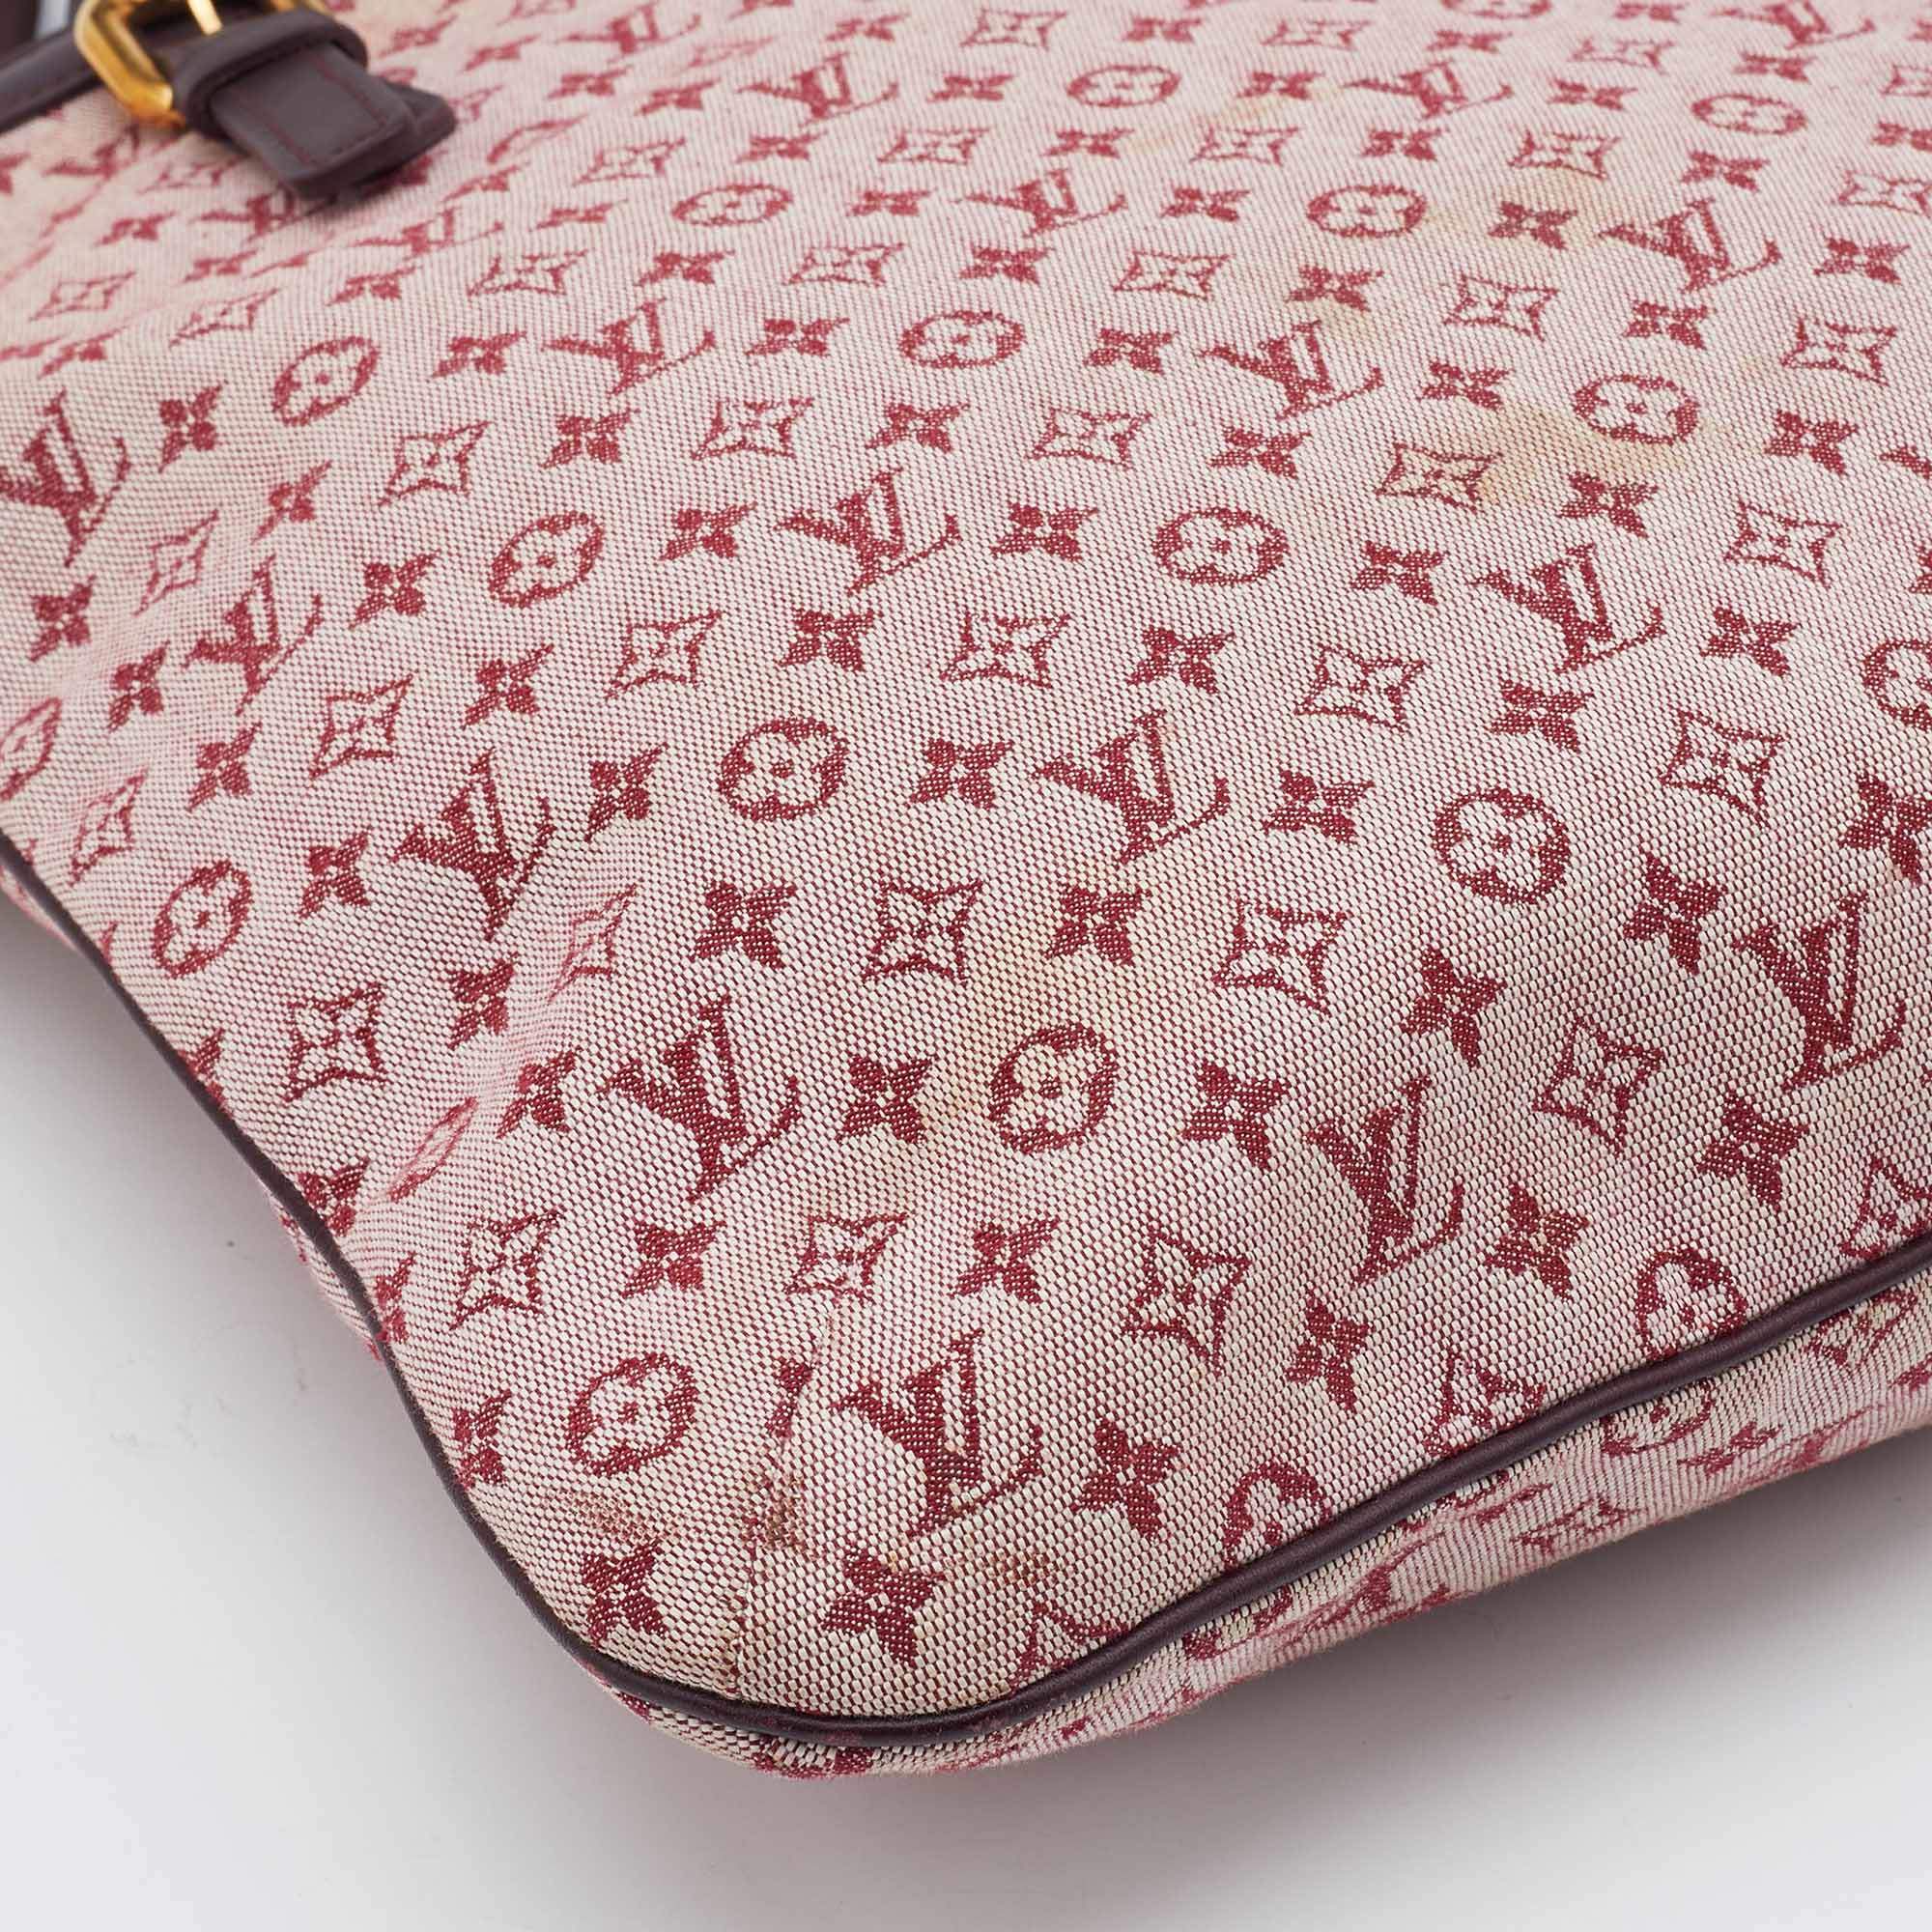 Louis Vuitton Monogram Mini Francoise Tote Bag Handbag Shoulder Cerise M92210